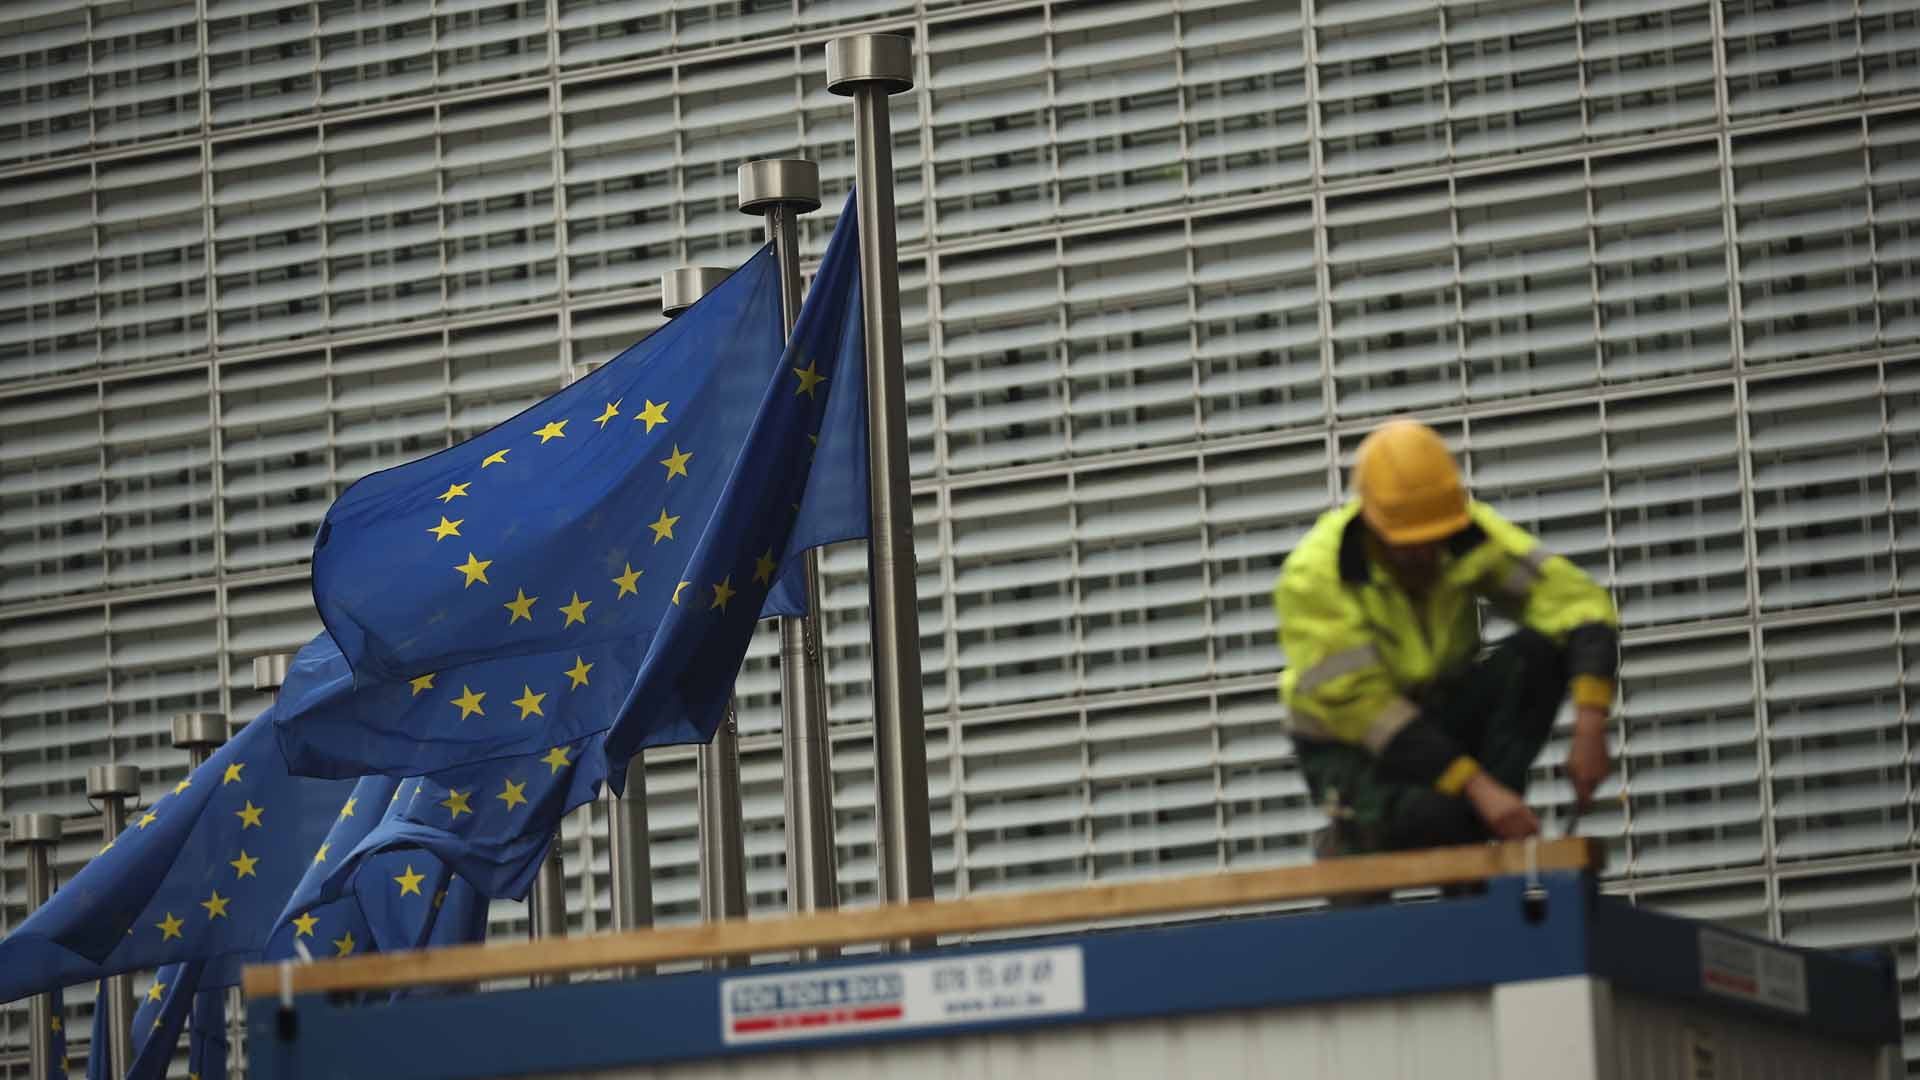 Ein Bauarbeiter arbeitet im Außenbereich des Hauptsitzes der EU-Kommission in Brüssel (Belgien), während neben ihm Europaflaggen wehen | picture alliance/dpa/AP